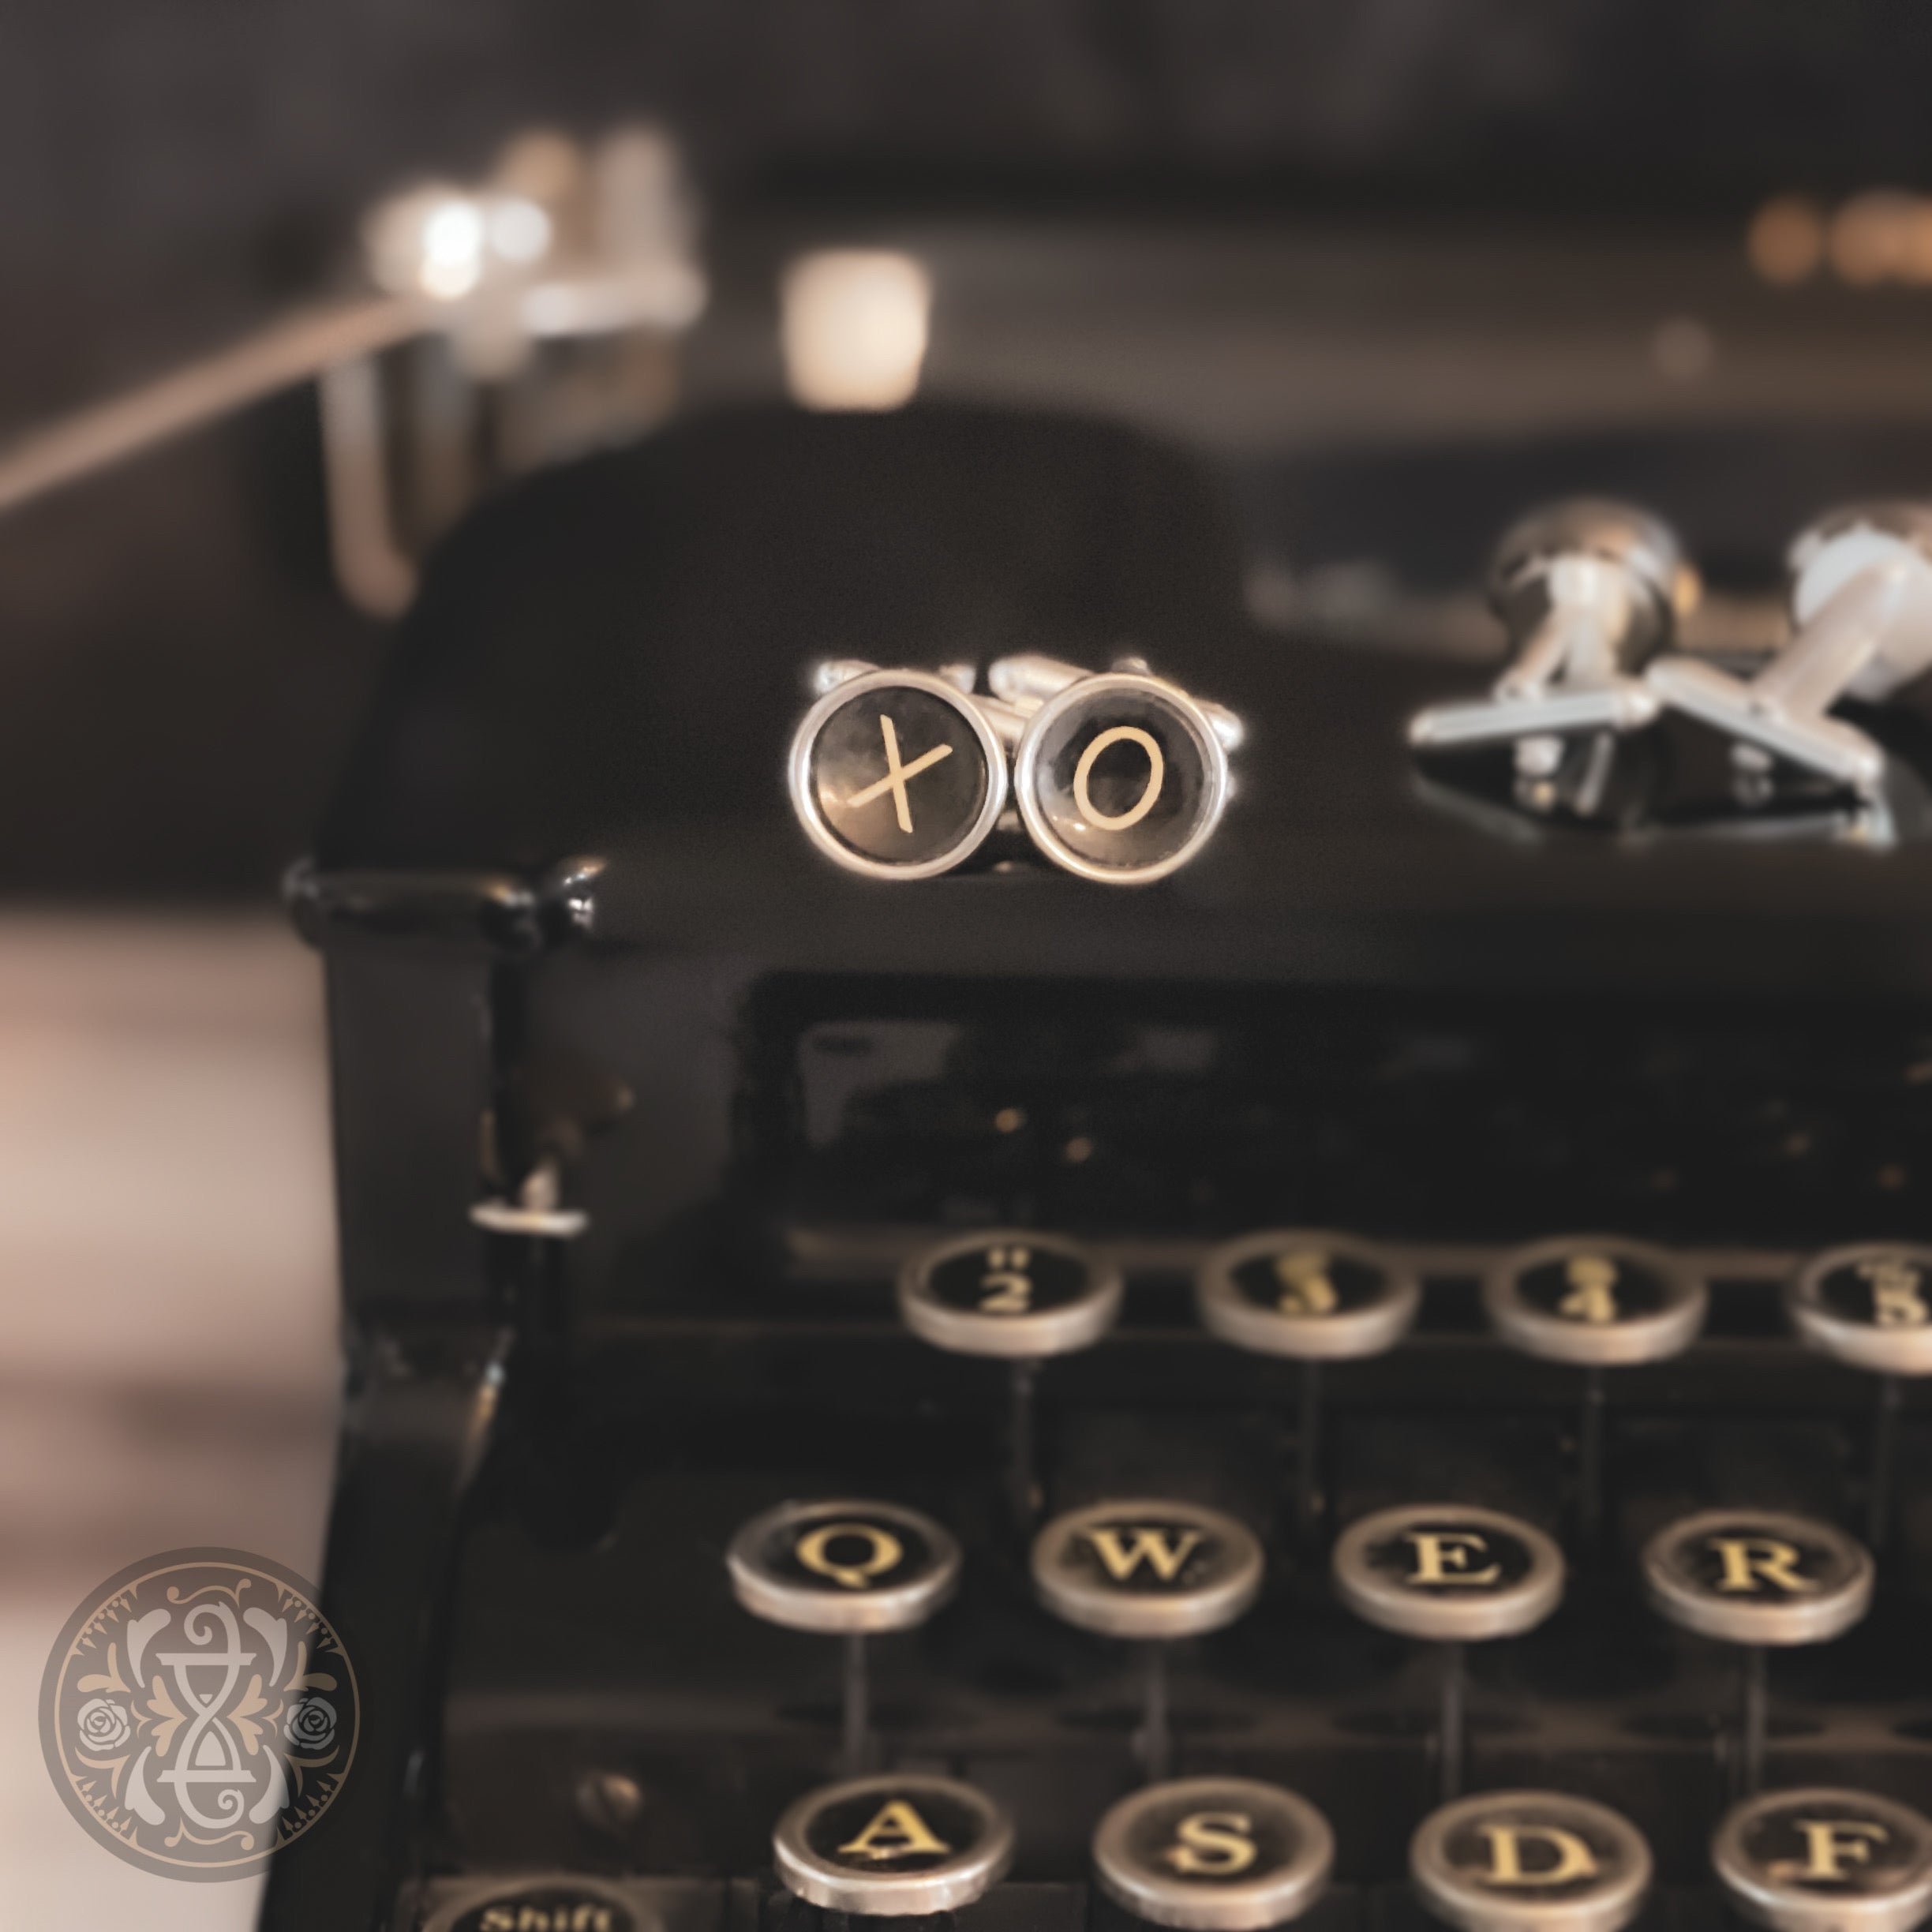 Vintage Typewriter Key 